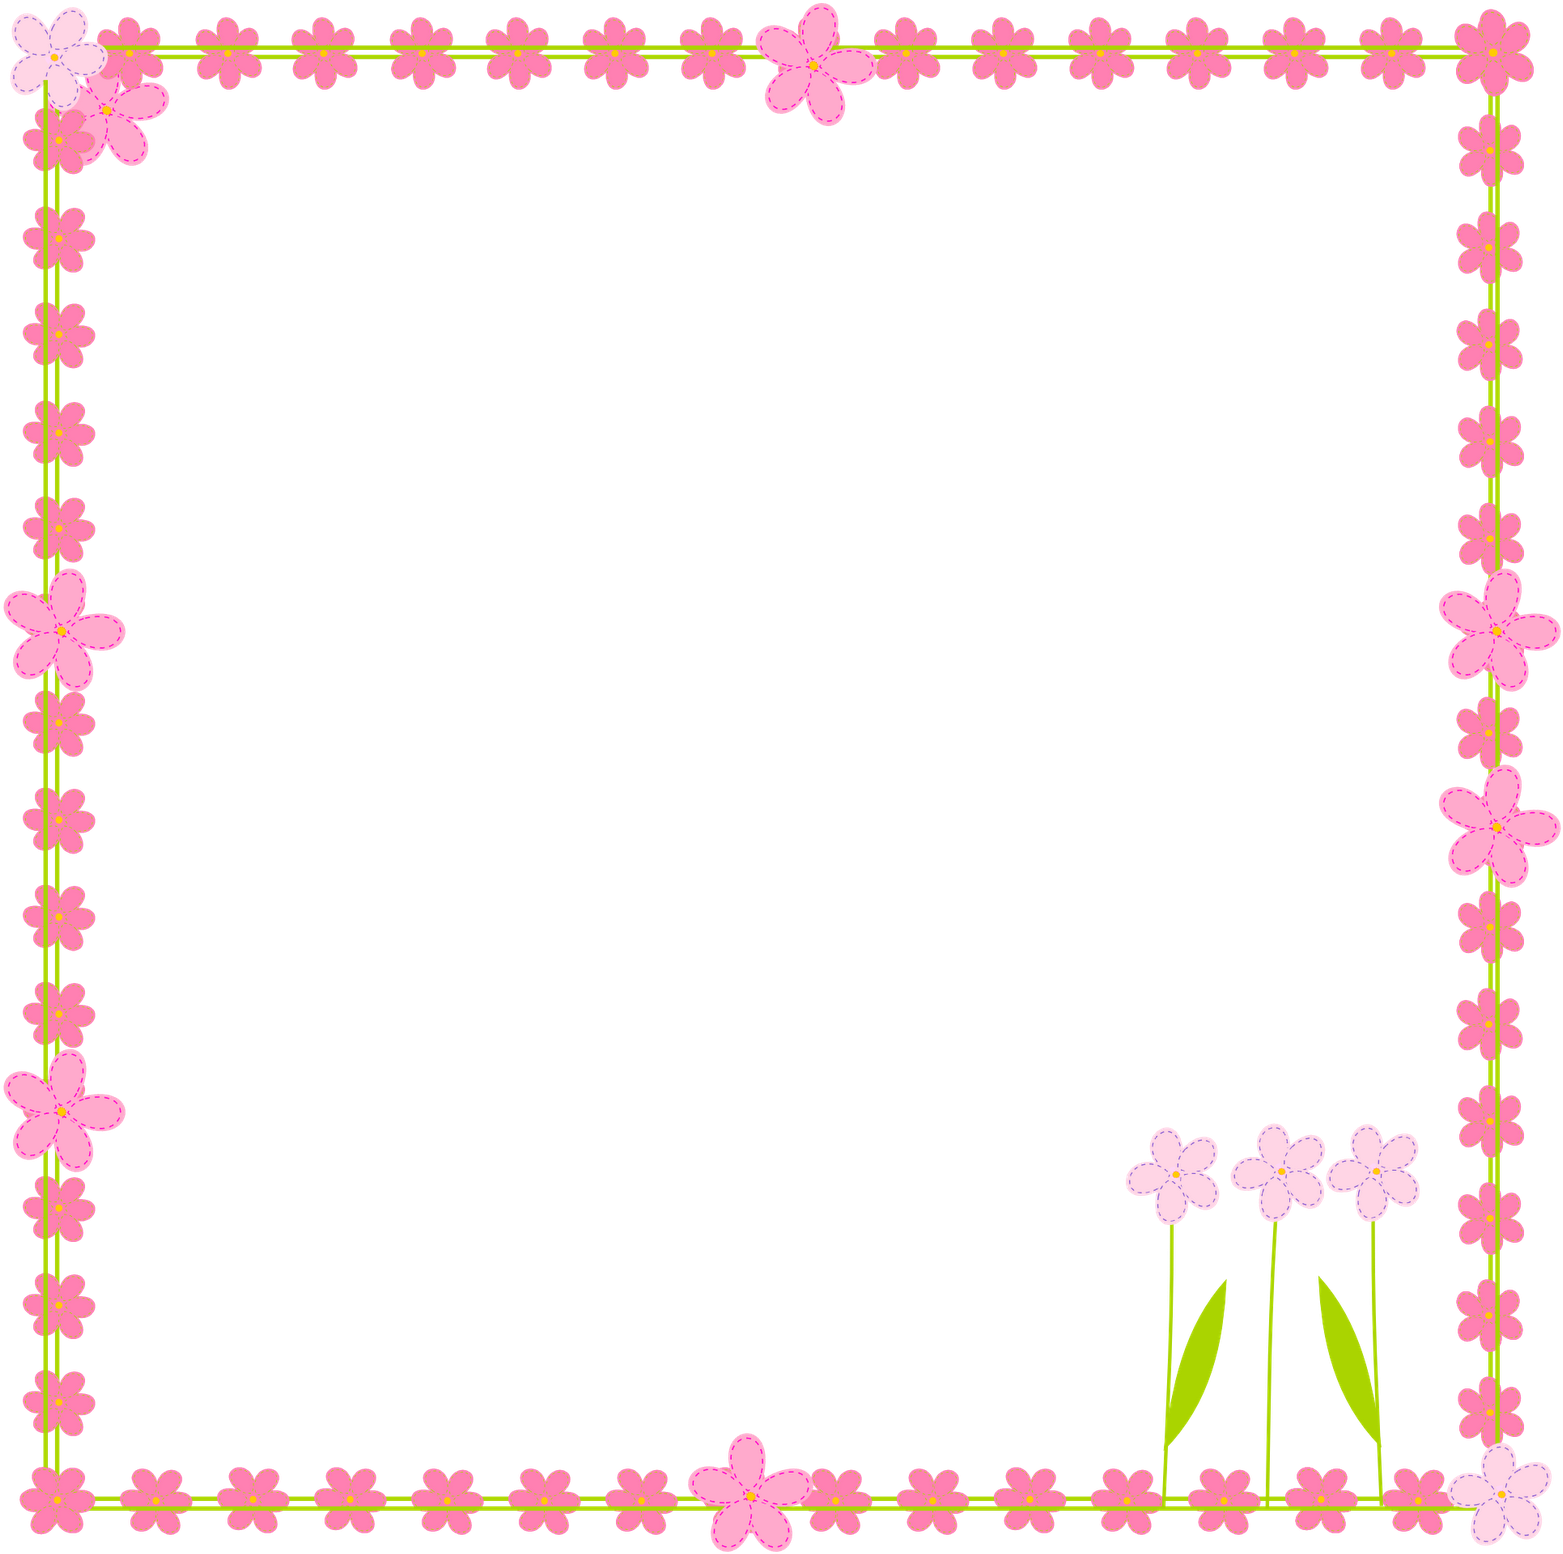 Vector Square Flower Border Frame PNG File